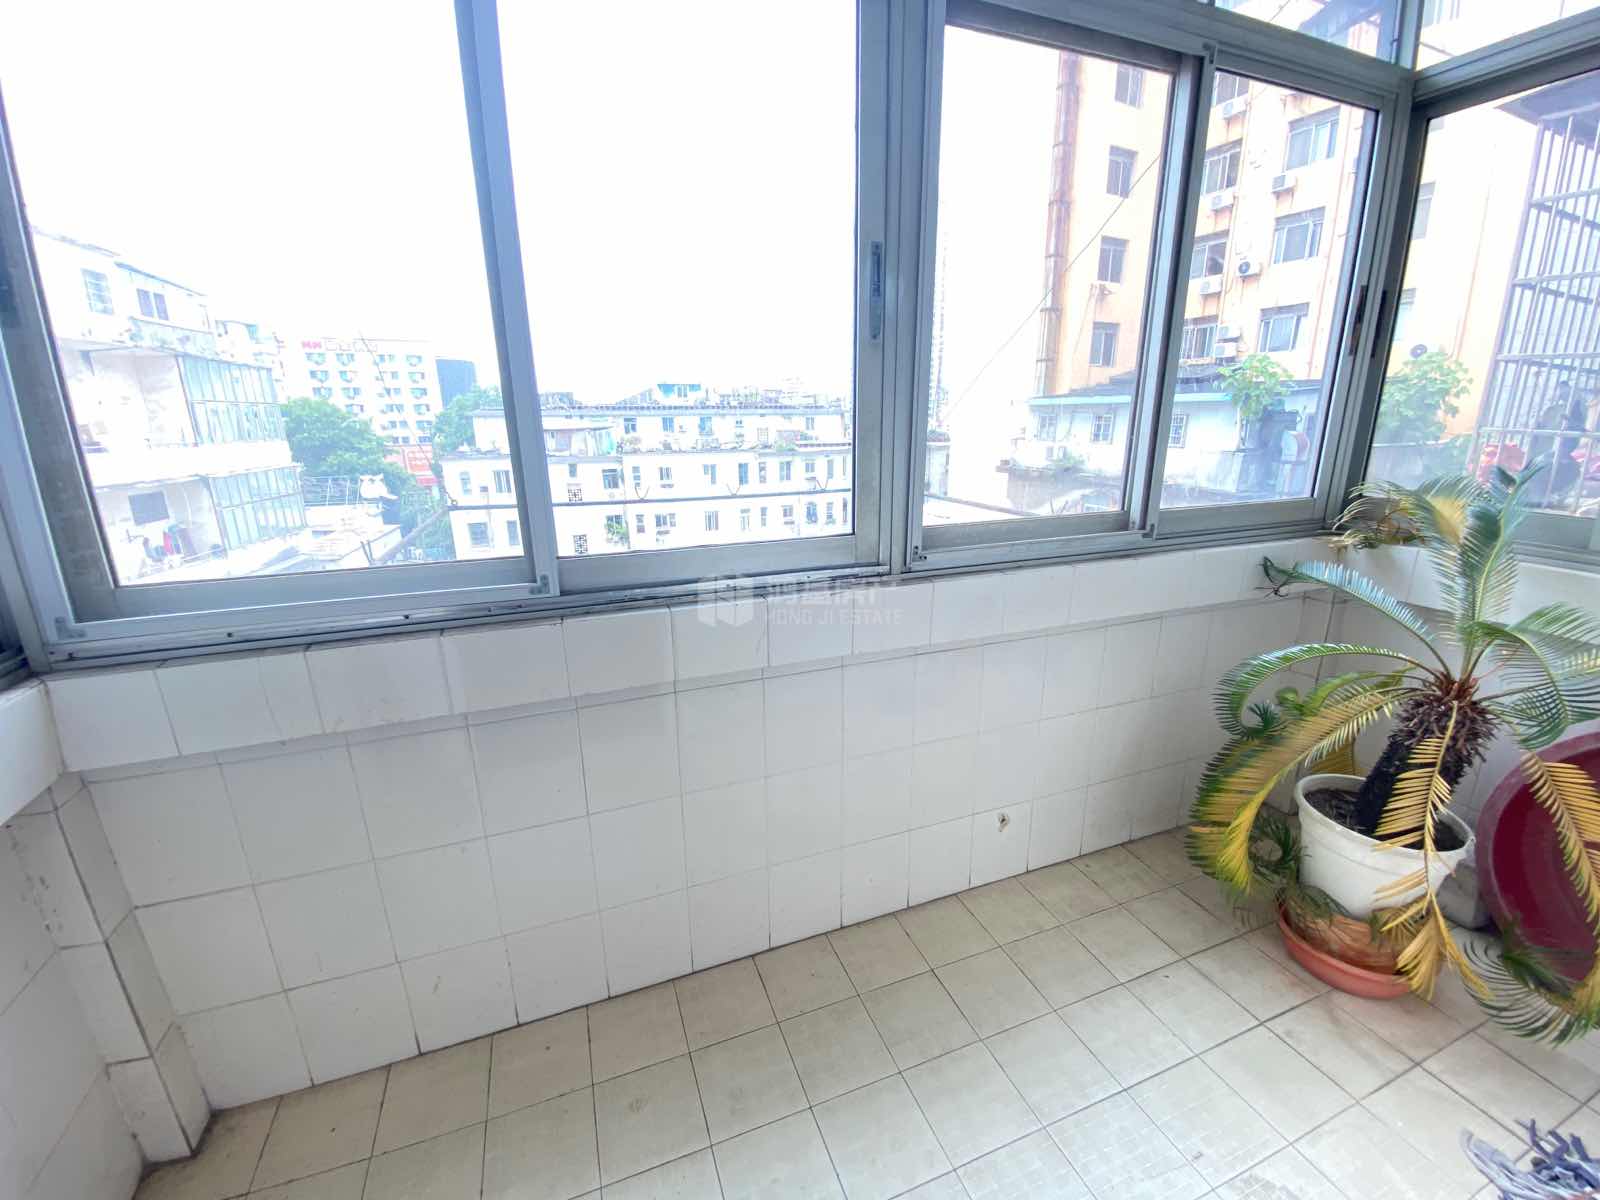 广润门三区8片,紧邻地铁口,经典小房型,仅售119万元8